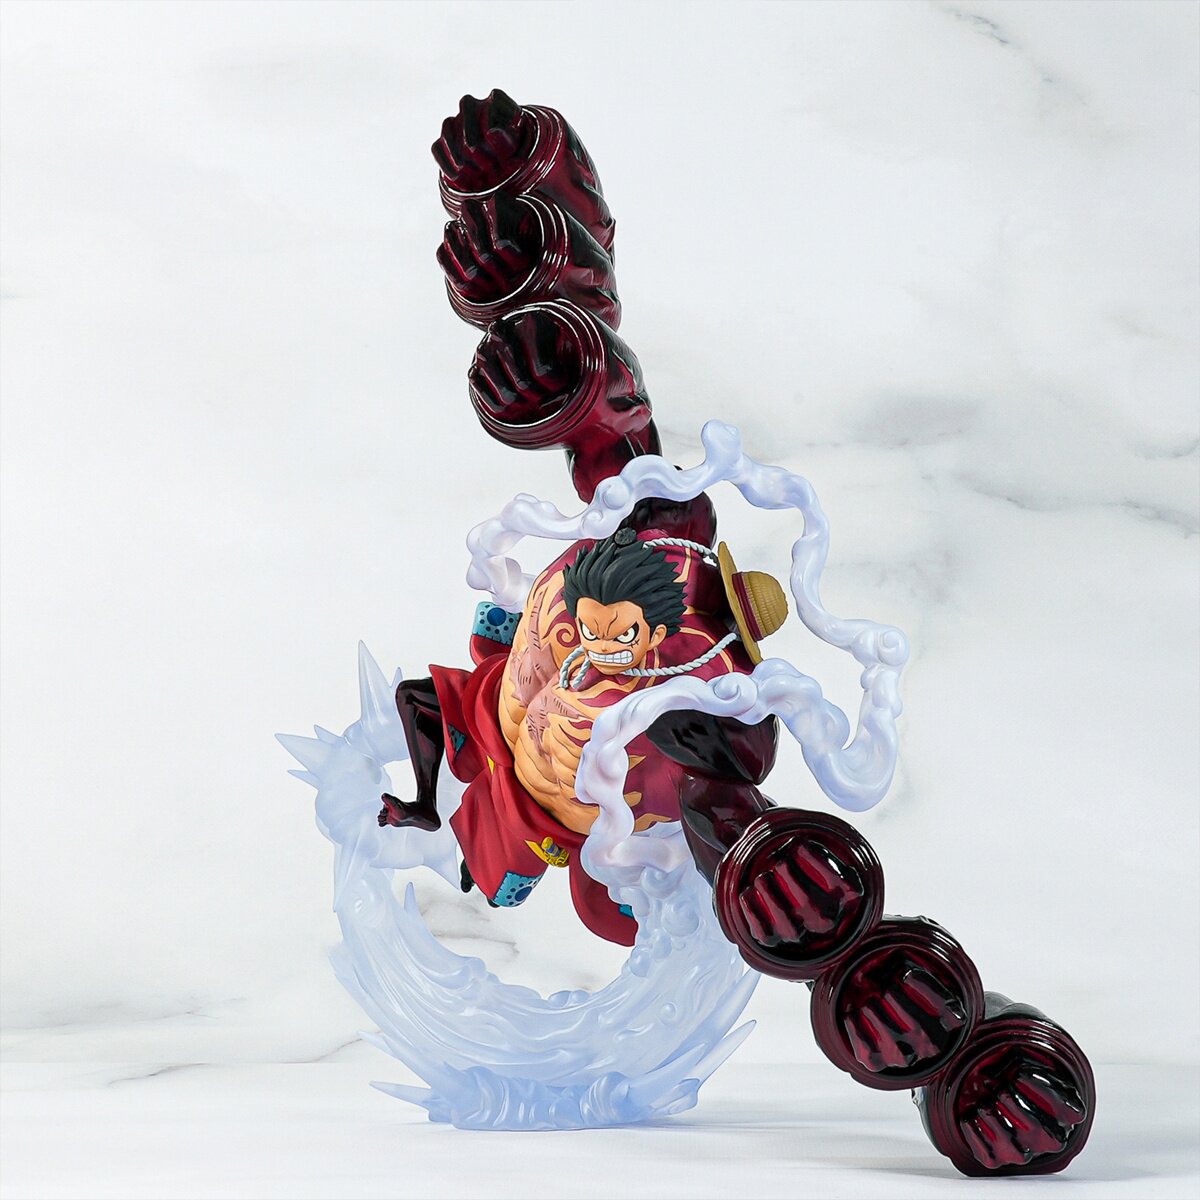 One Piece Premium Figure - Luffy Gear 4 - Violet